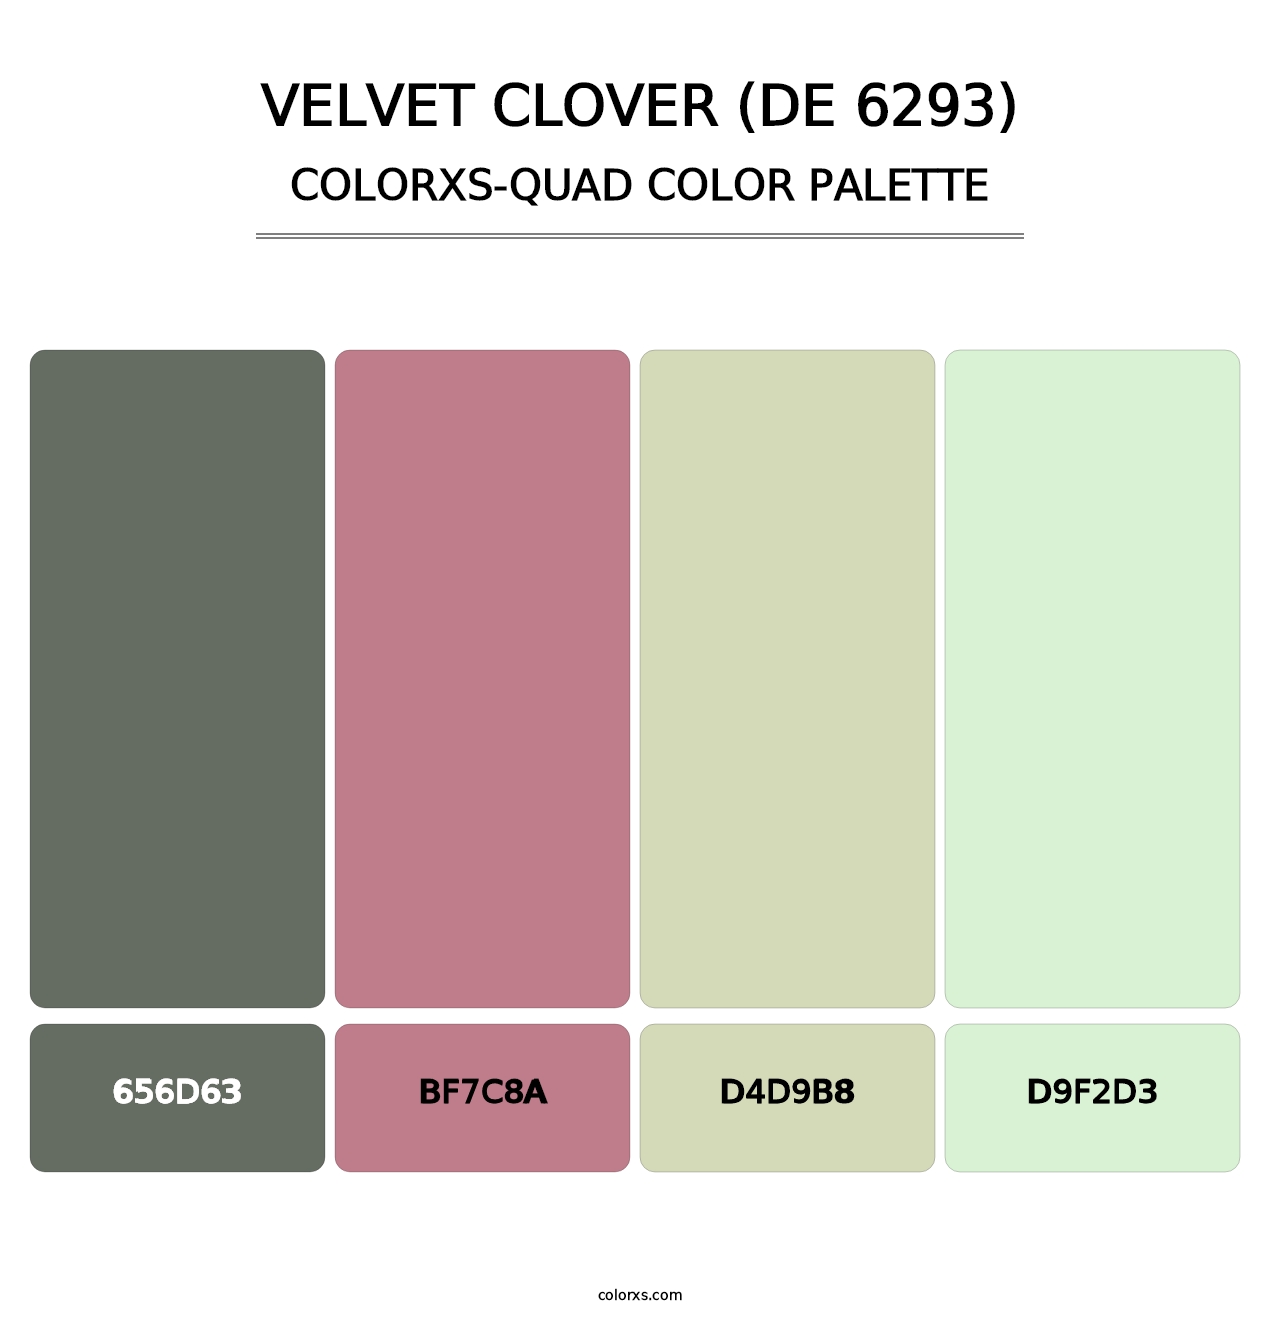 Velvet Clover (DE 6293) - Colorxs Quad Palette